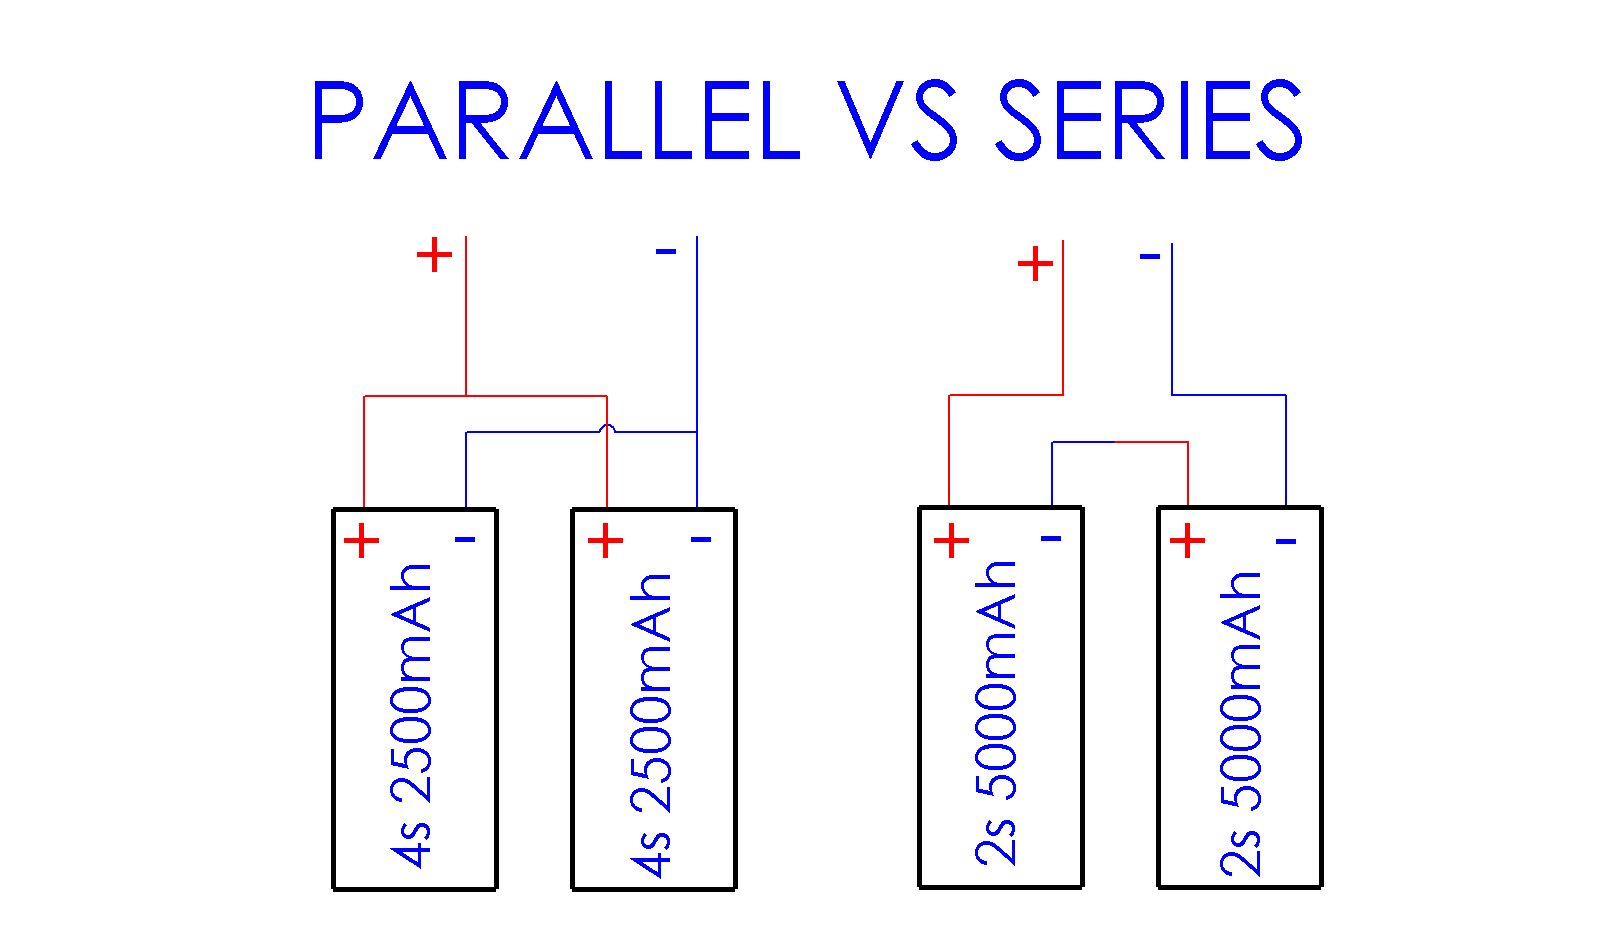 Batteries In Series Vs. Parallel